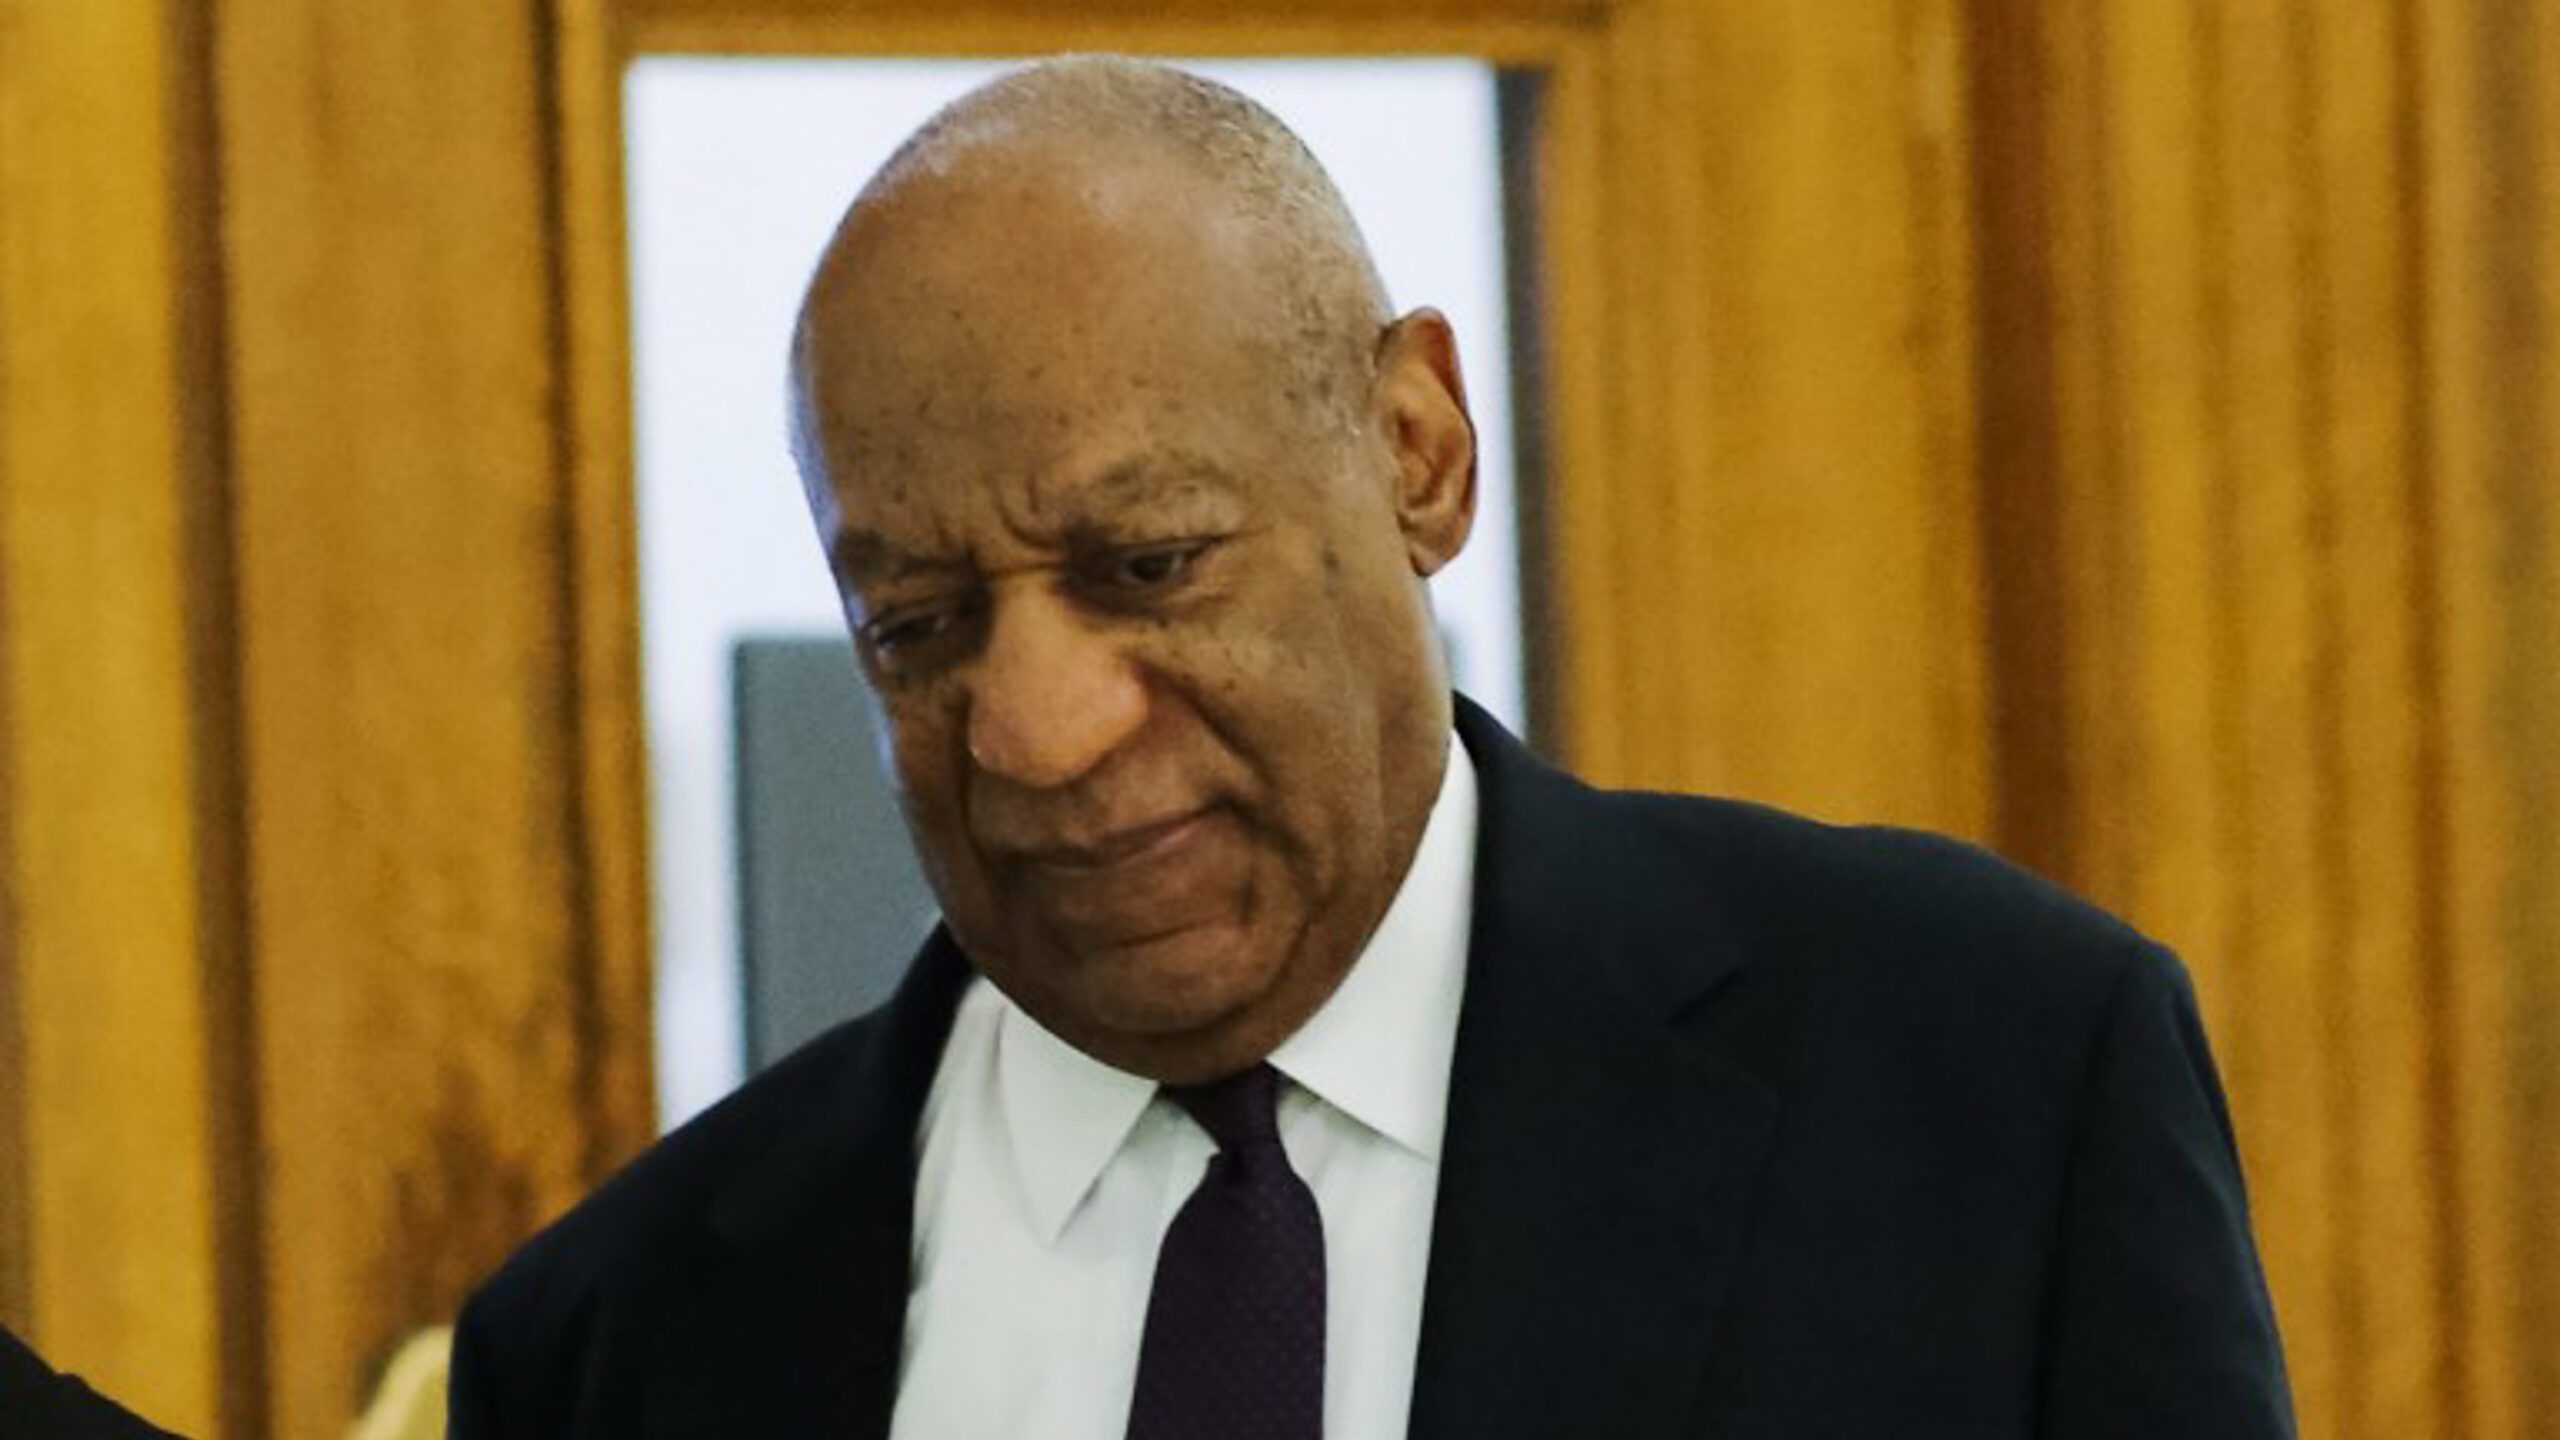 U.S. judge declares mistrial in Cosby sexual assault case